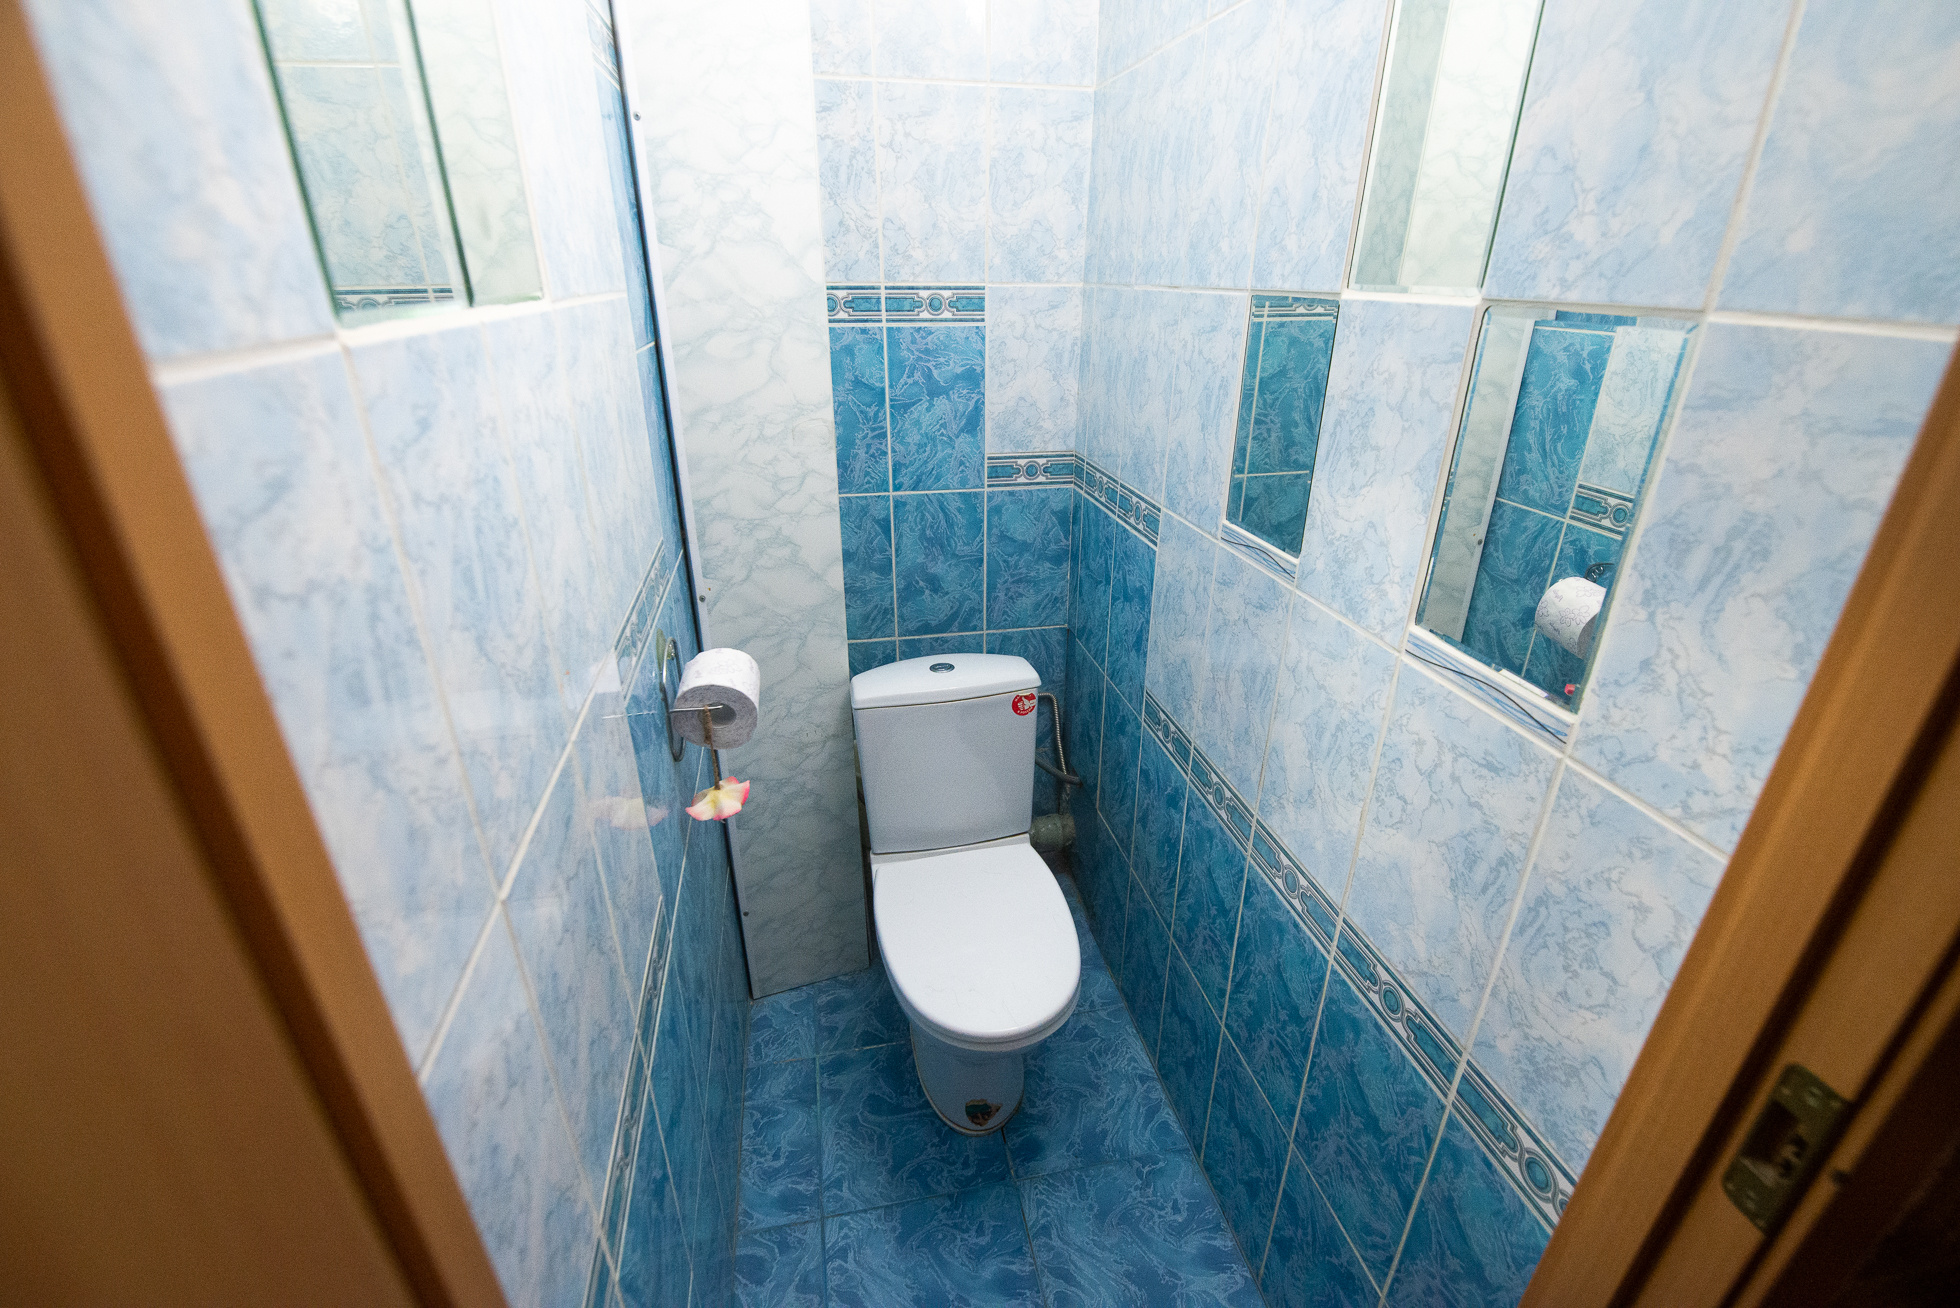 Даже туалет может выглядеть просторным кабинетом, если его правильно снять